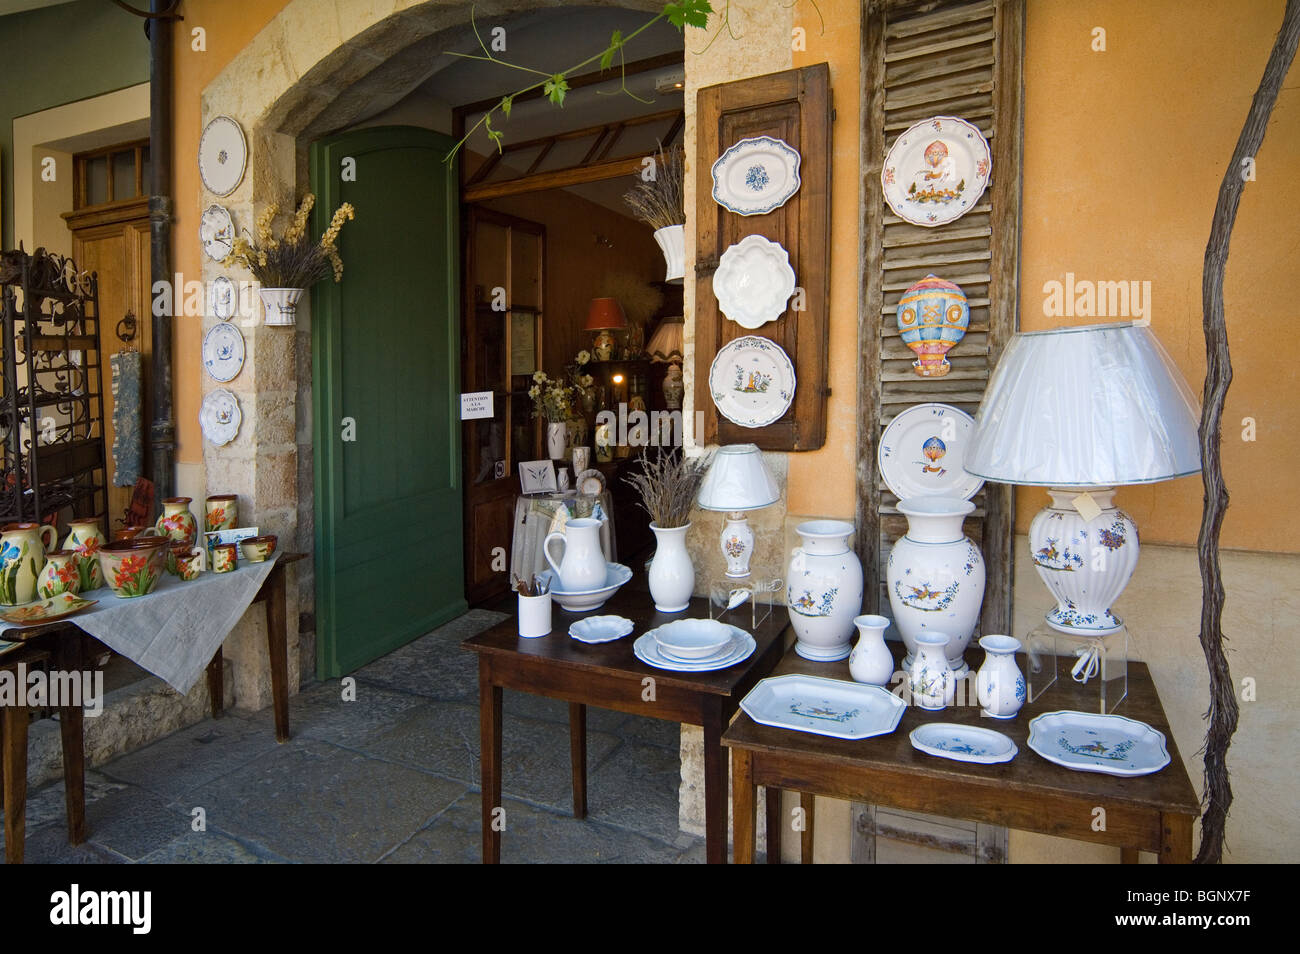 Souvenir shop with faience / pottery at Moustiers-Sainte-Marie, Alpes-de-Haute-Provence, Provence, France Stock Photo